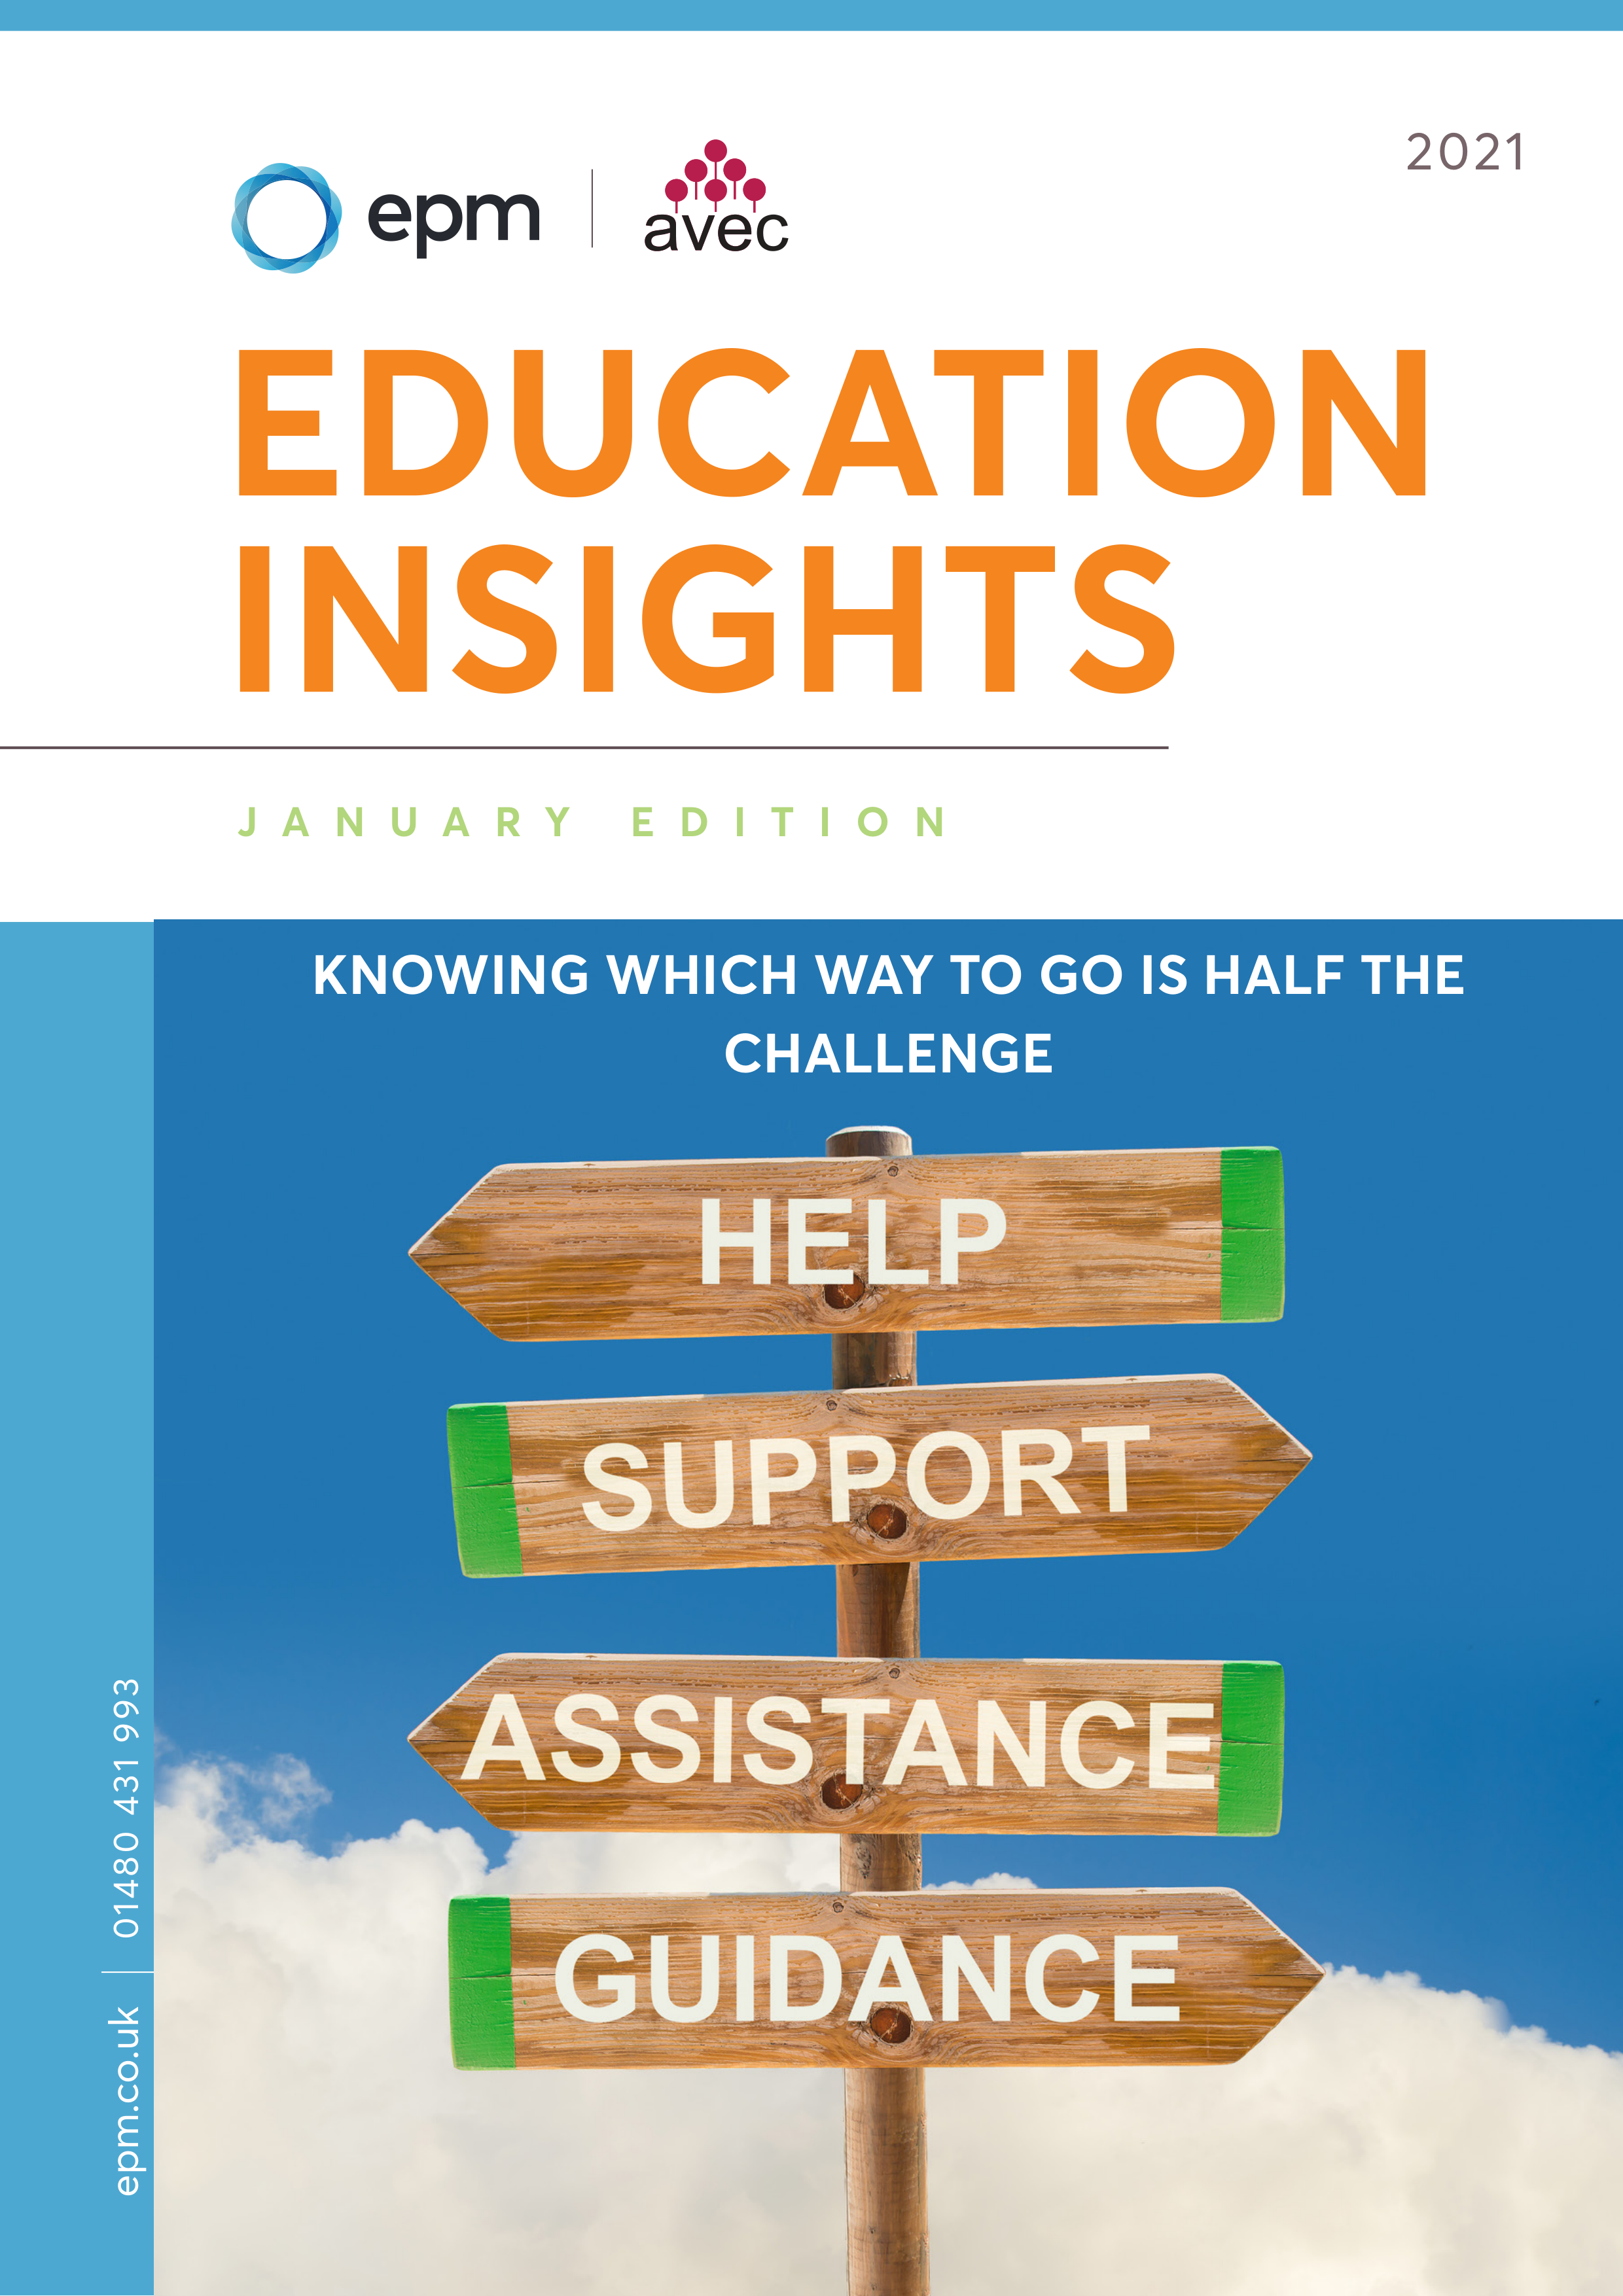 4. Education Insights January 21